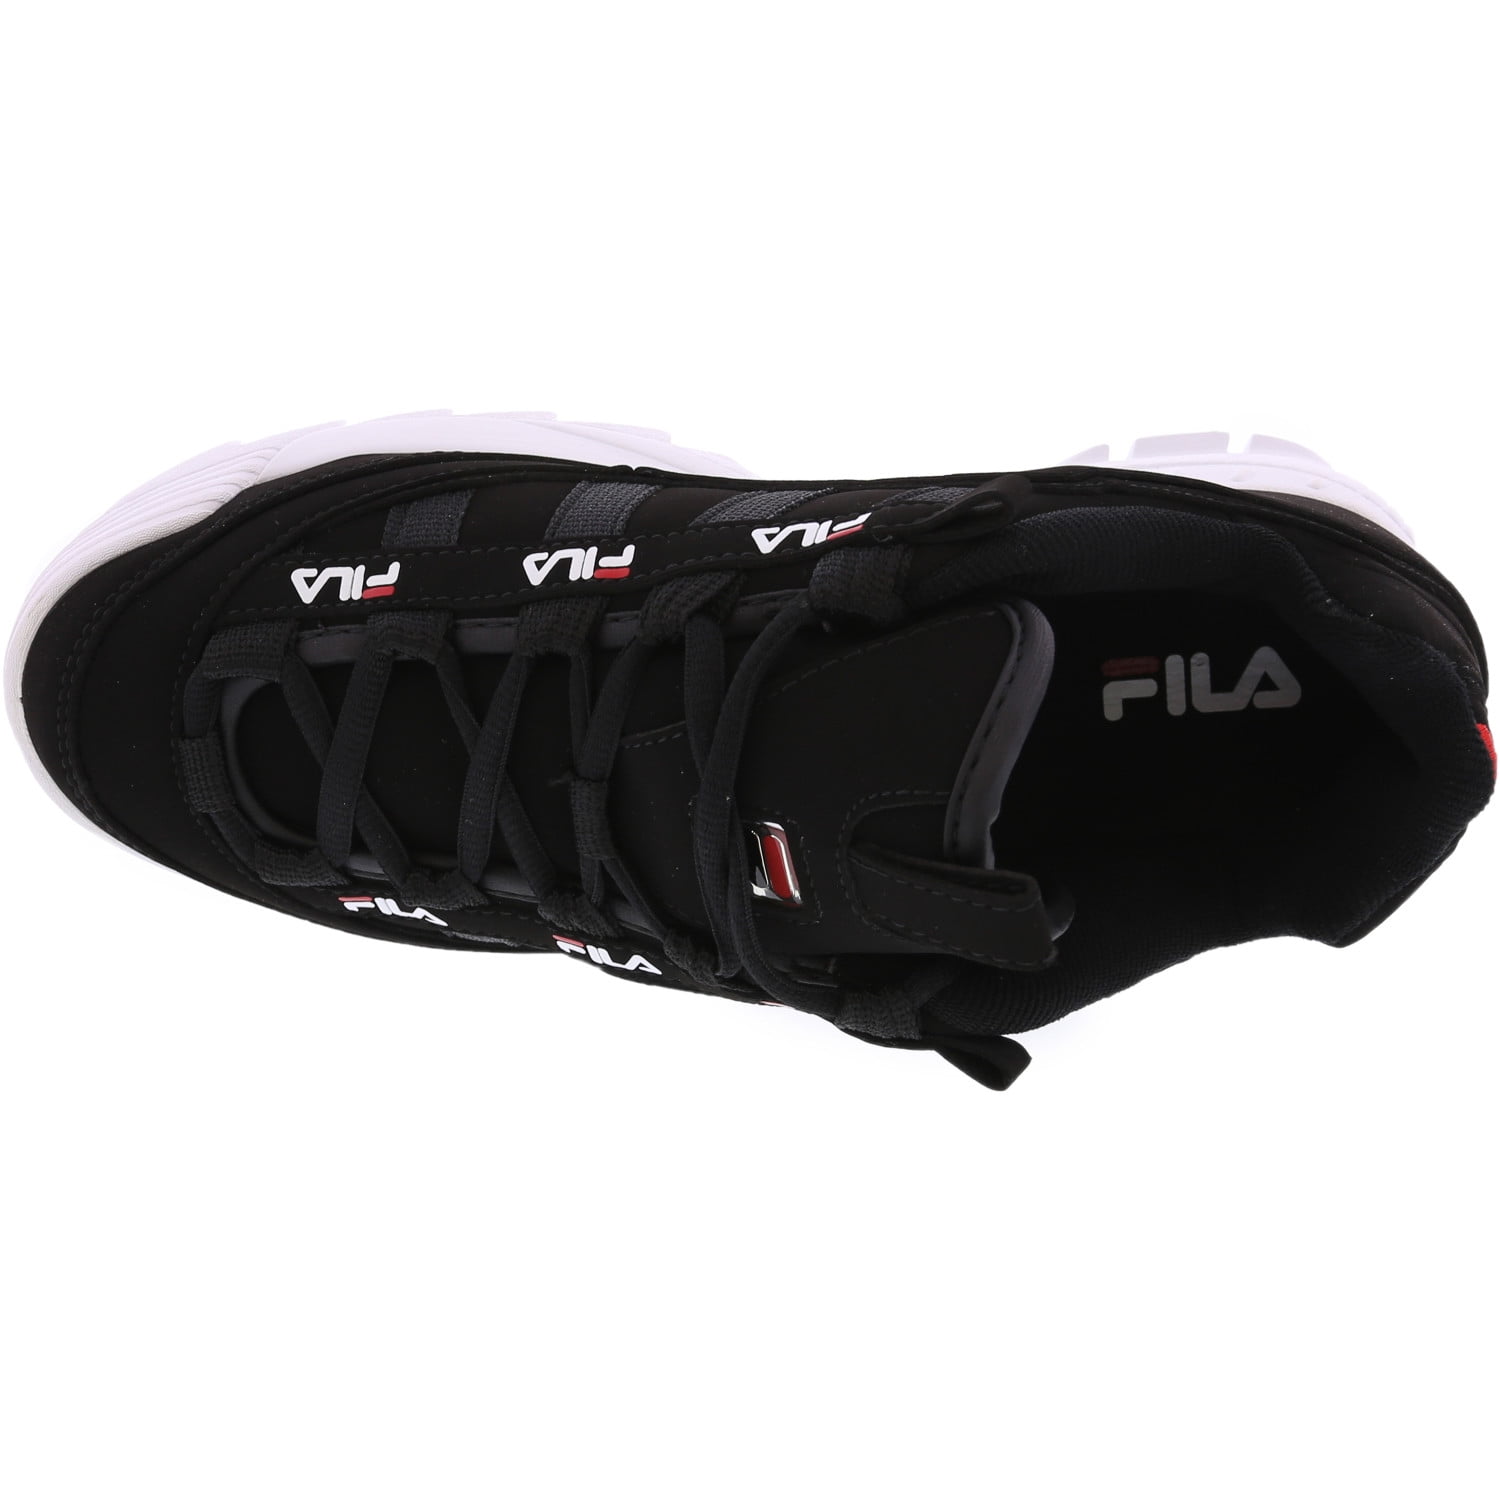 Praktisch Klem Pijlpunt Fila Men's D-Formation Black / Red White Ankle-High Walking Shoe - 8.5M -  Walmart.com